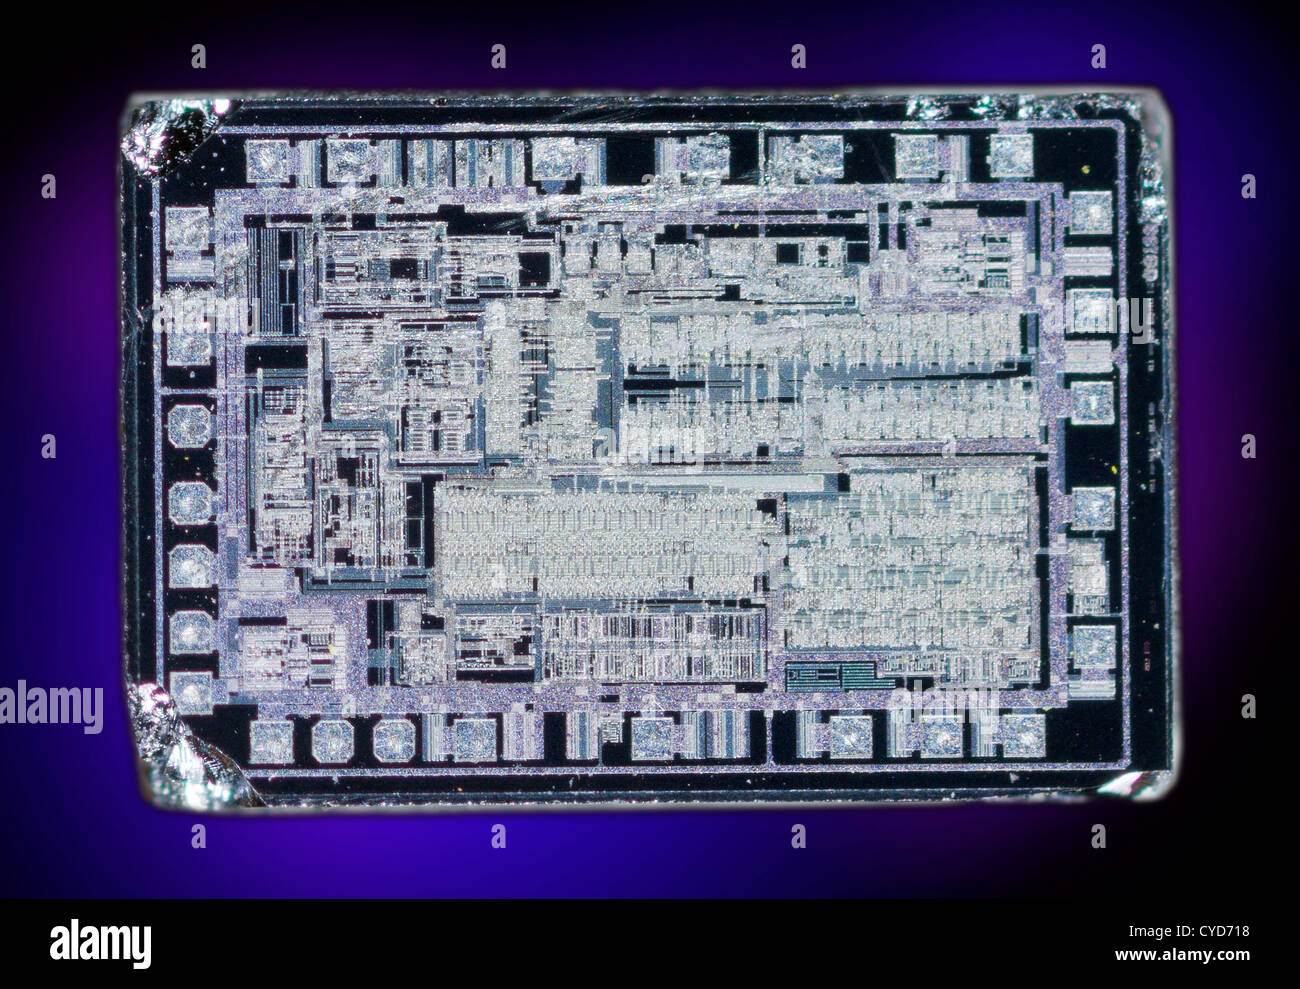 Makroaufnahme eines Silizium-Chips, integrierte Schaltung, lesen - schreiben Verstärkerschaltung. Stockfoto